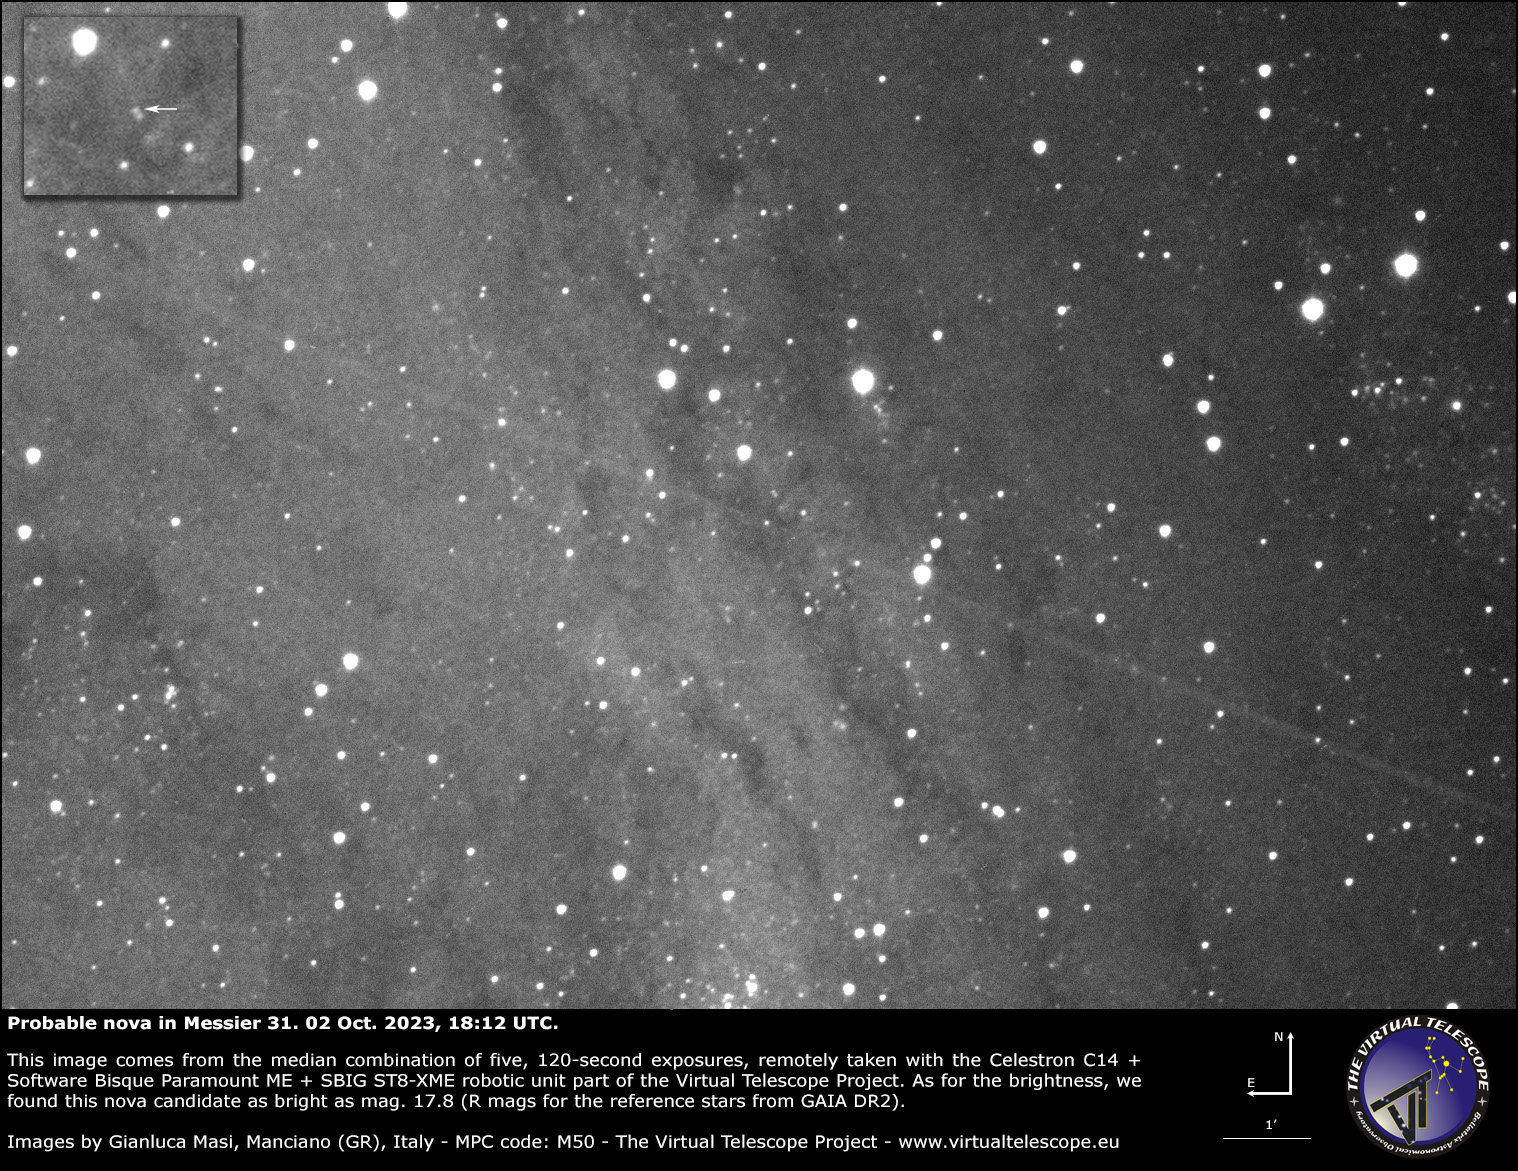 Probabile nova in Messier 31: immagine di conferma del 2 ottobre 2023.